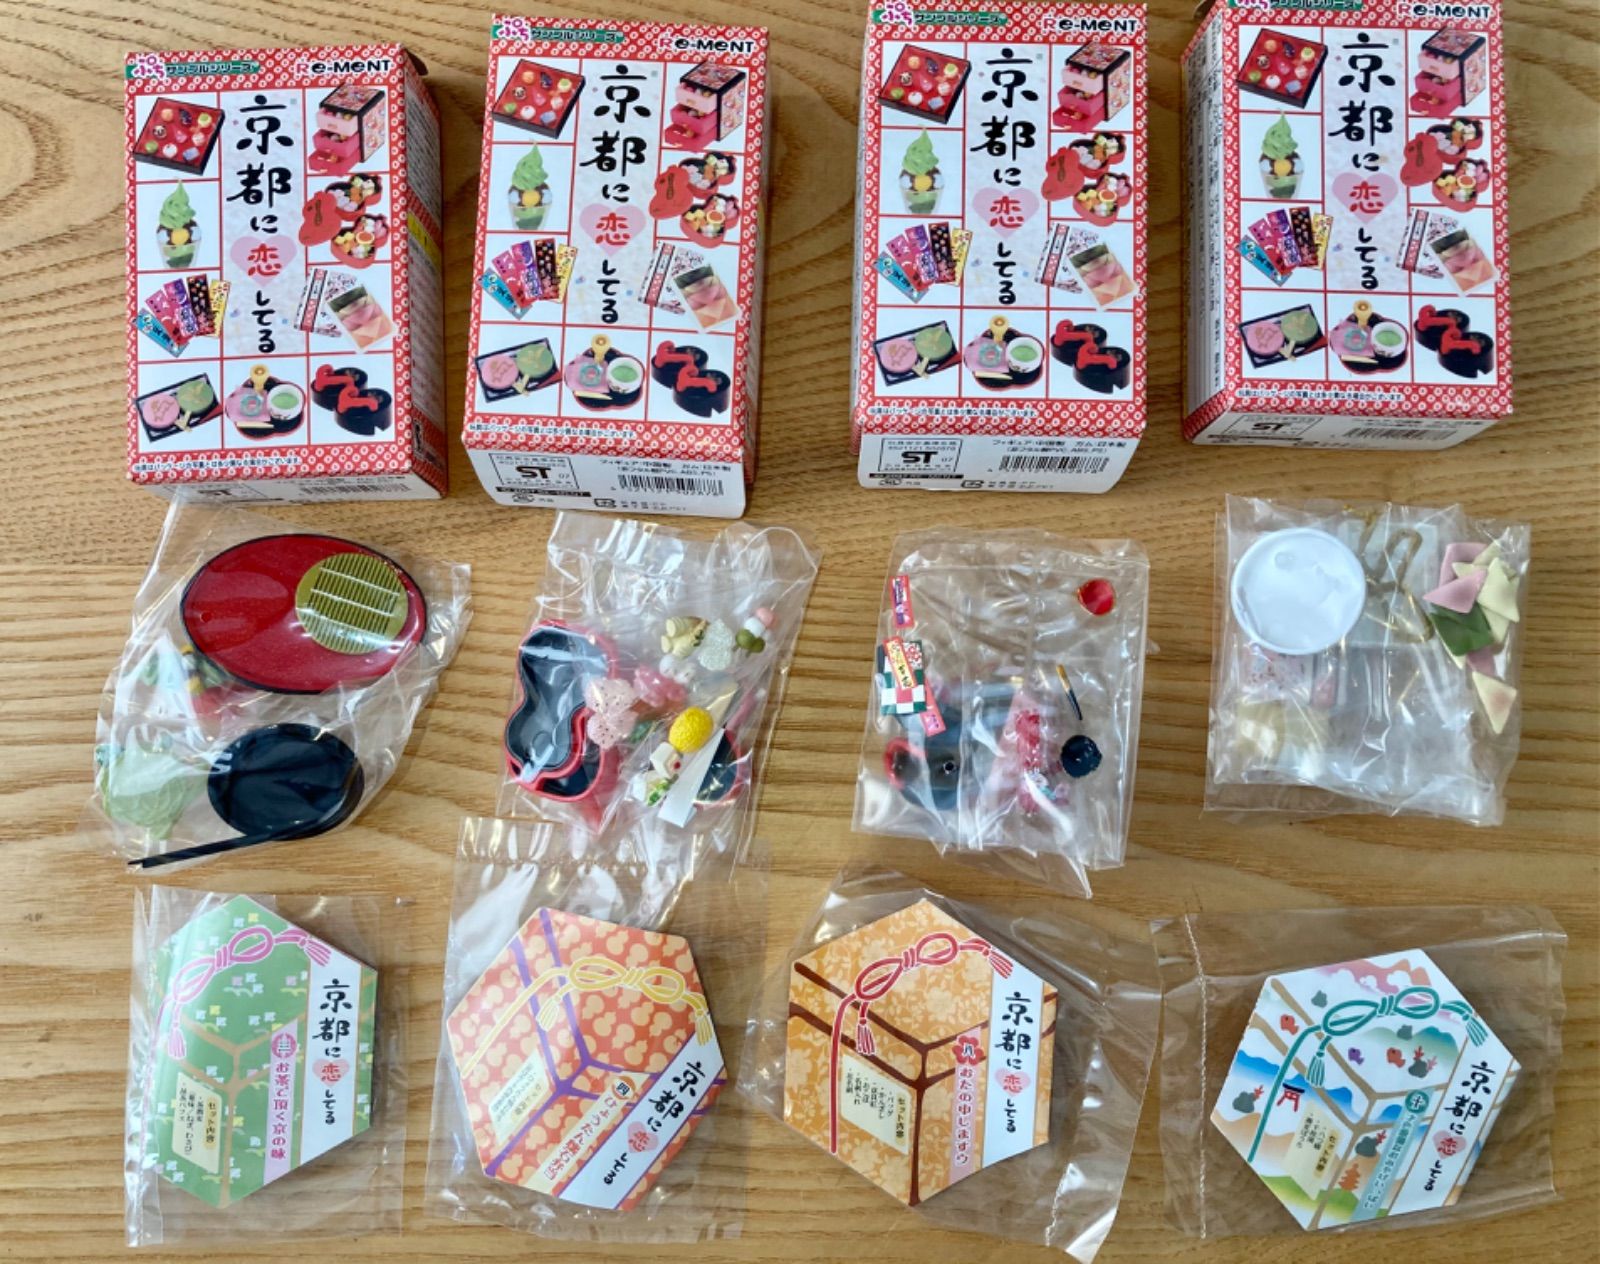 ぷちサンプルシリーズ 京都に恋してる 10種コンプリート3お茶で頂く京の味